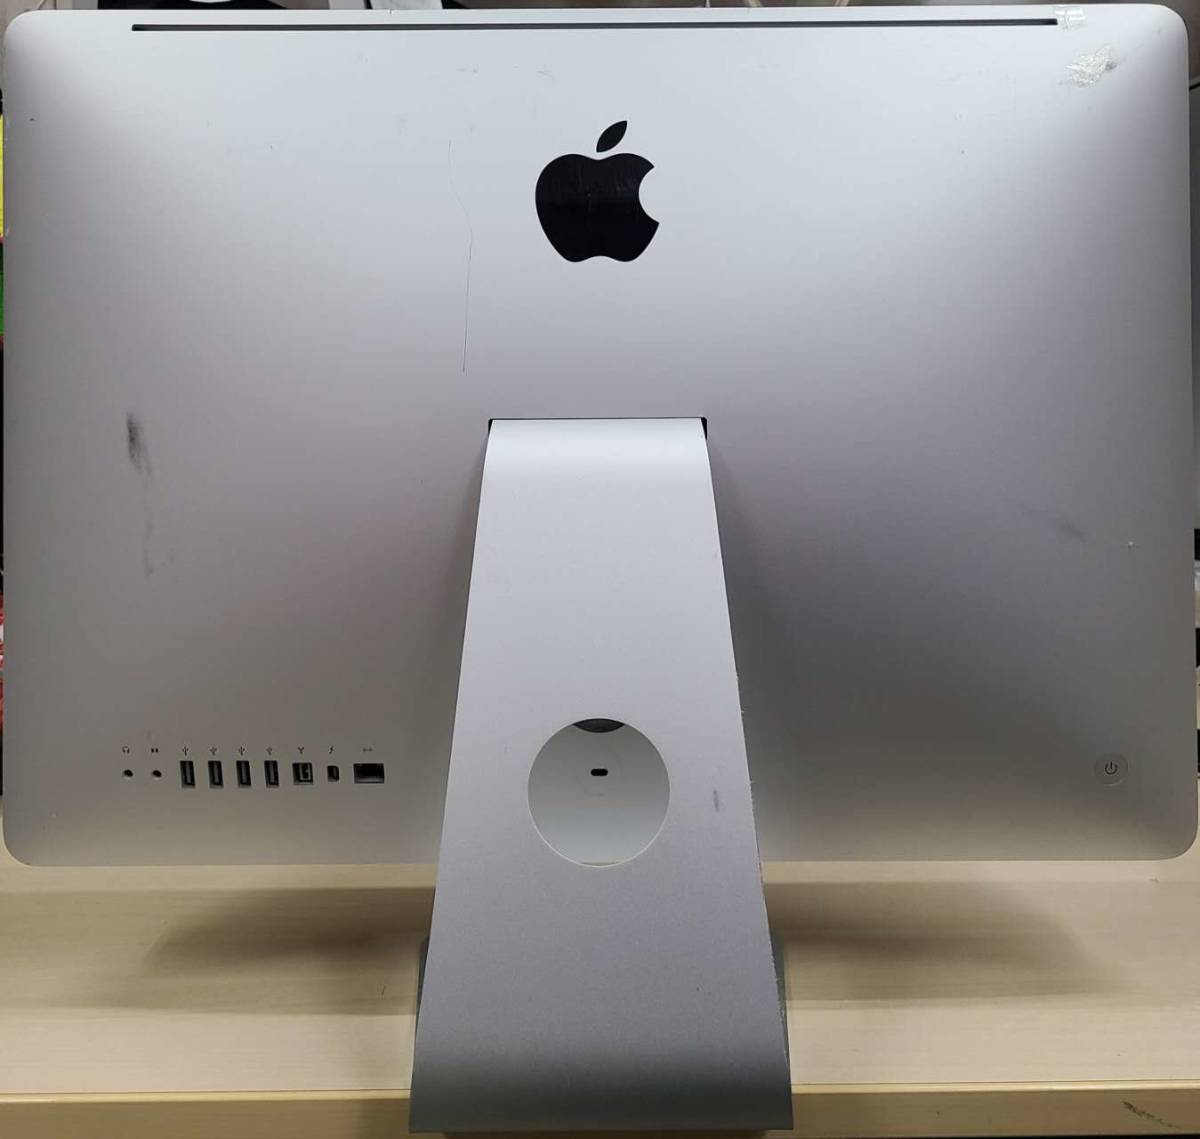 中古品Apple iMac A1311 iMac 21.5-inch Mid 2011 Intel Core i5 2.5